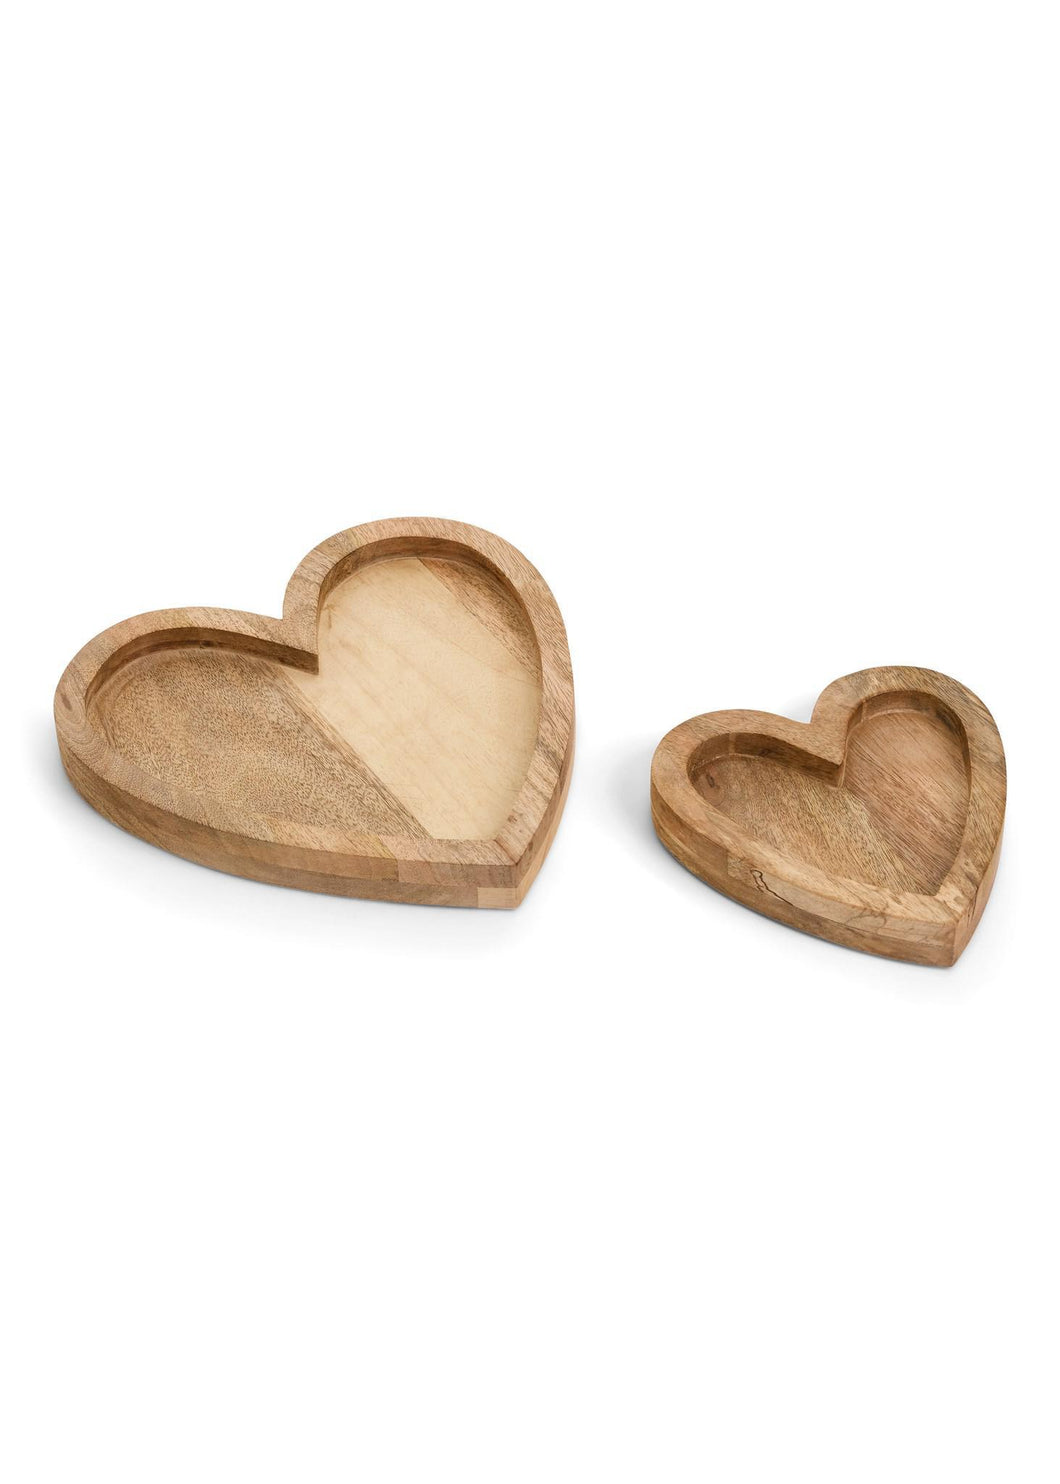 Wood Heart Trays